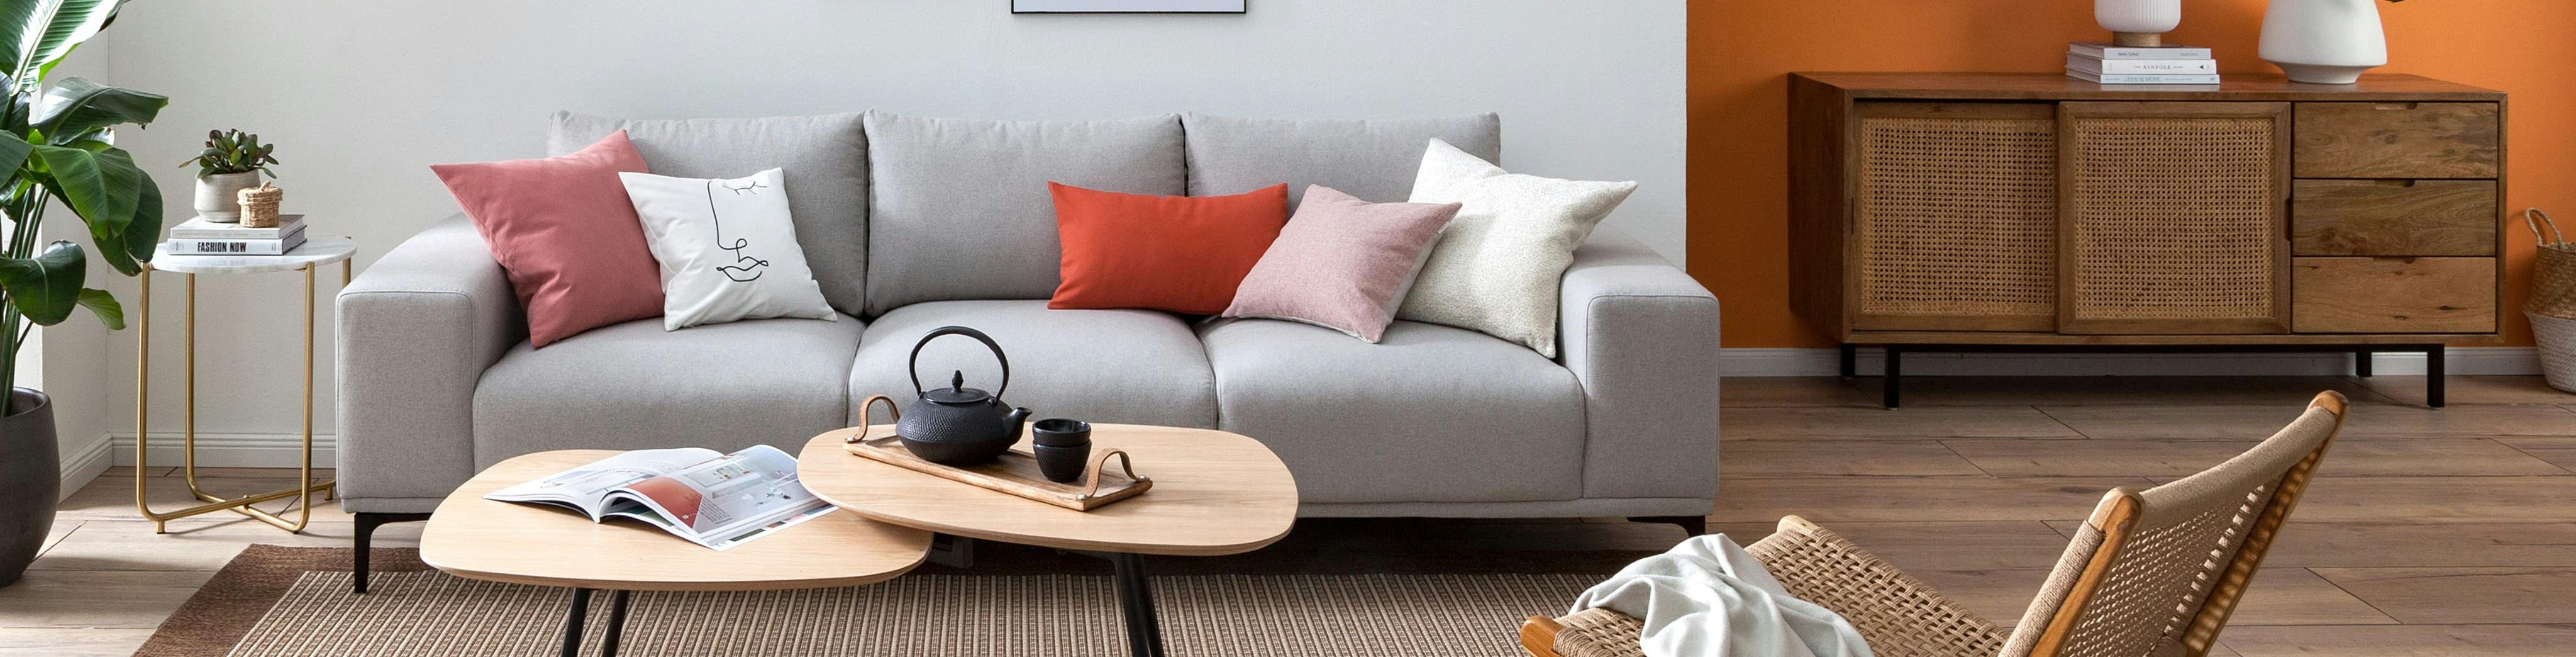 Offener Wohnbereich mit grauem Sofa, Satztischen, Loungesessel und Sideboard